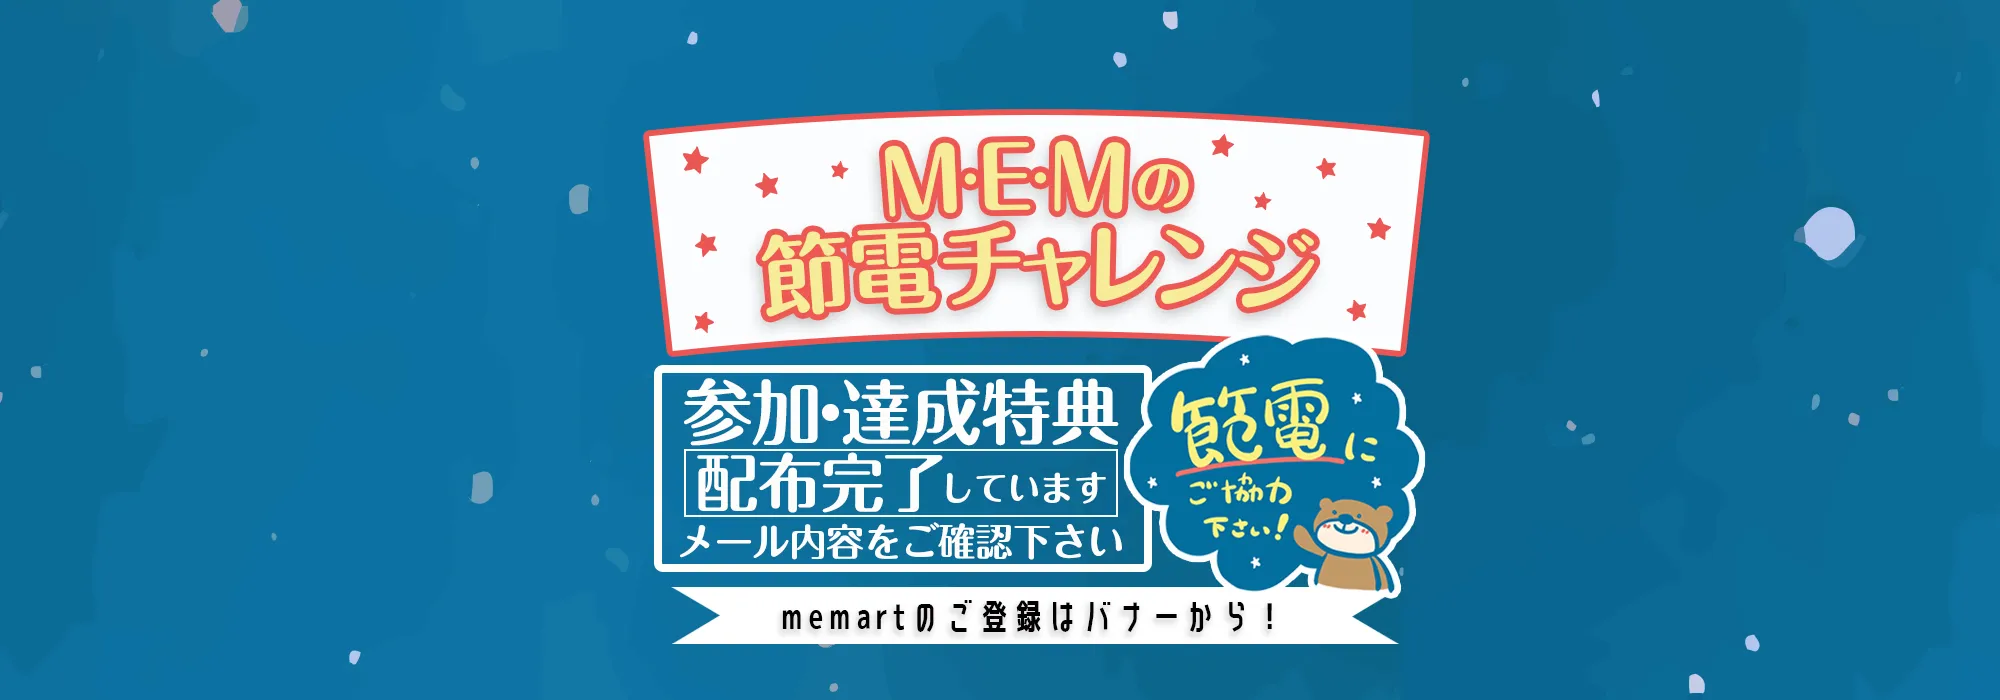 M・E・Mの節電チャレンジ